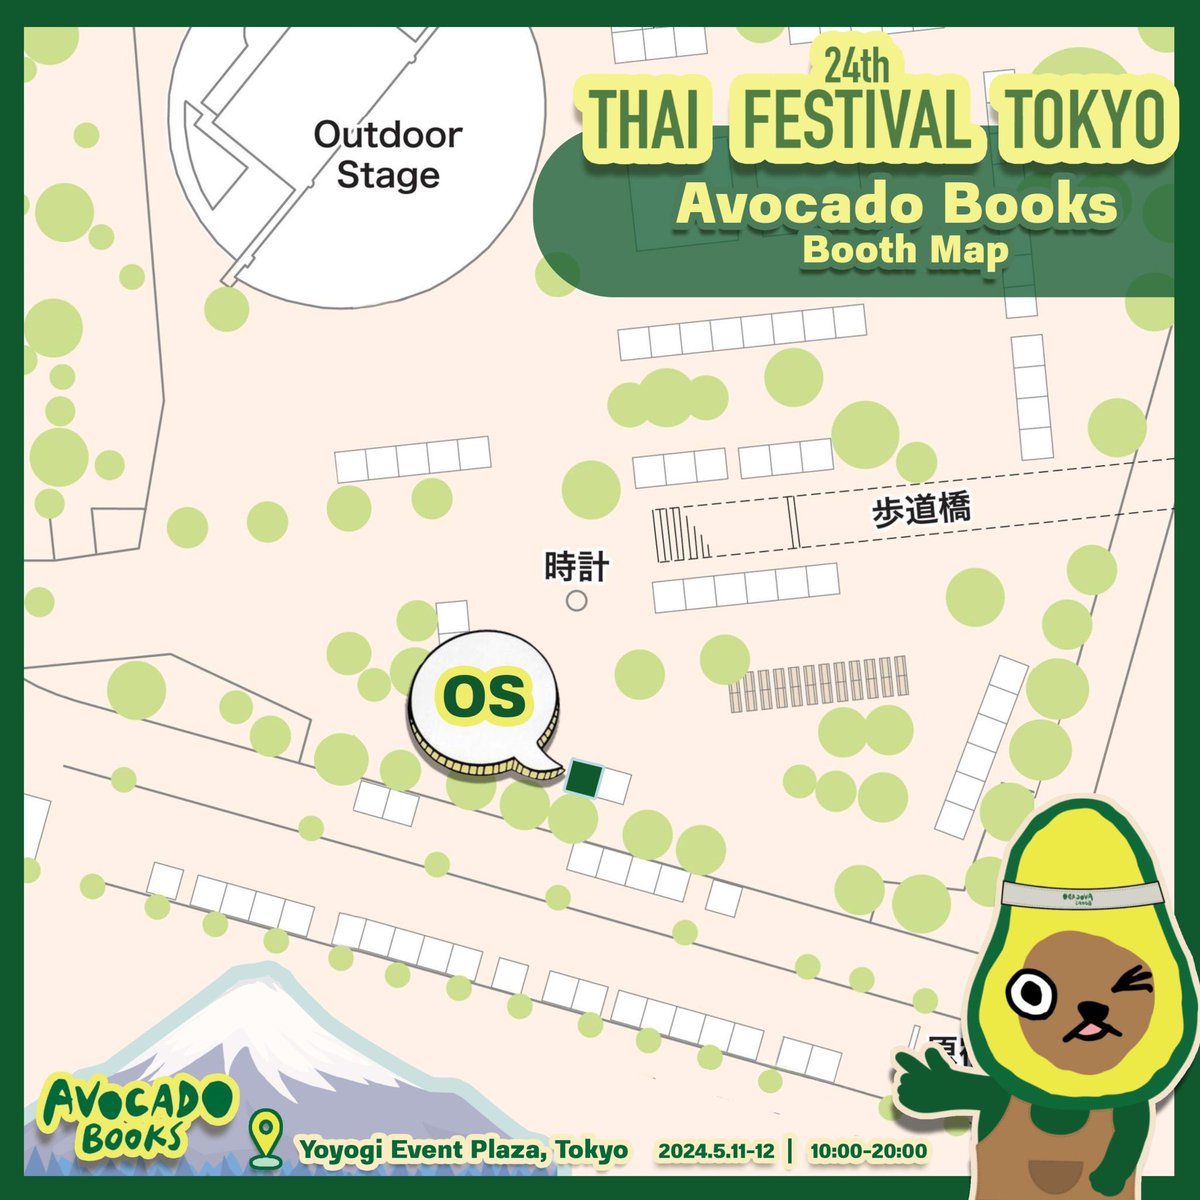 ไปอุดหนุนหนังสือ Avocado Books กันได้ที่บูท OS ในงาน #ThaiFestivalTokyo2024 นะครับพ้มมมมม ^^